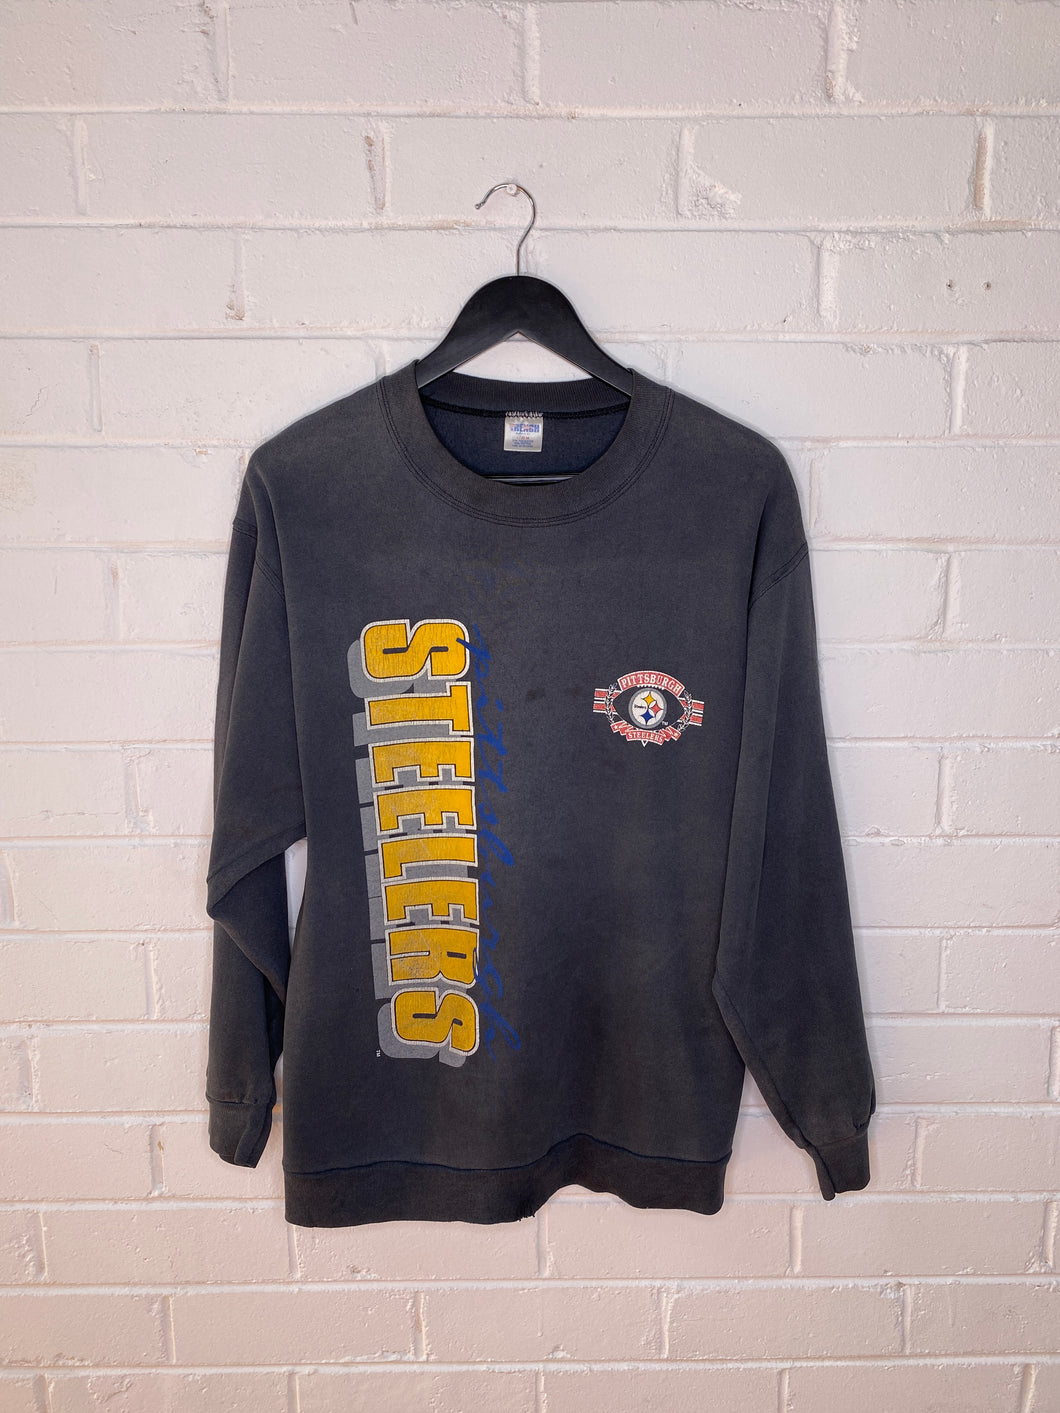 Vintage Pittsburgh Steelers Sweater